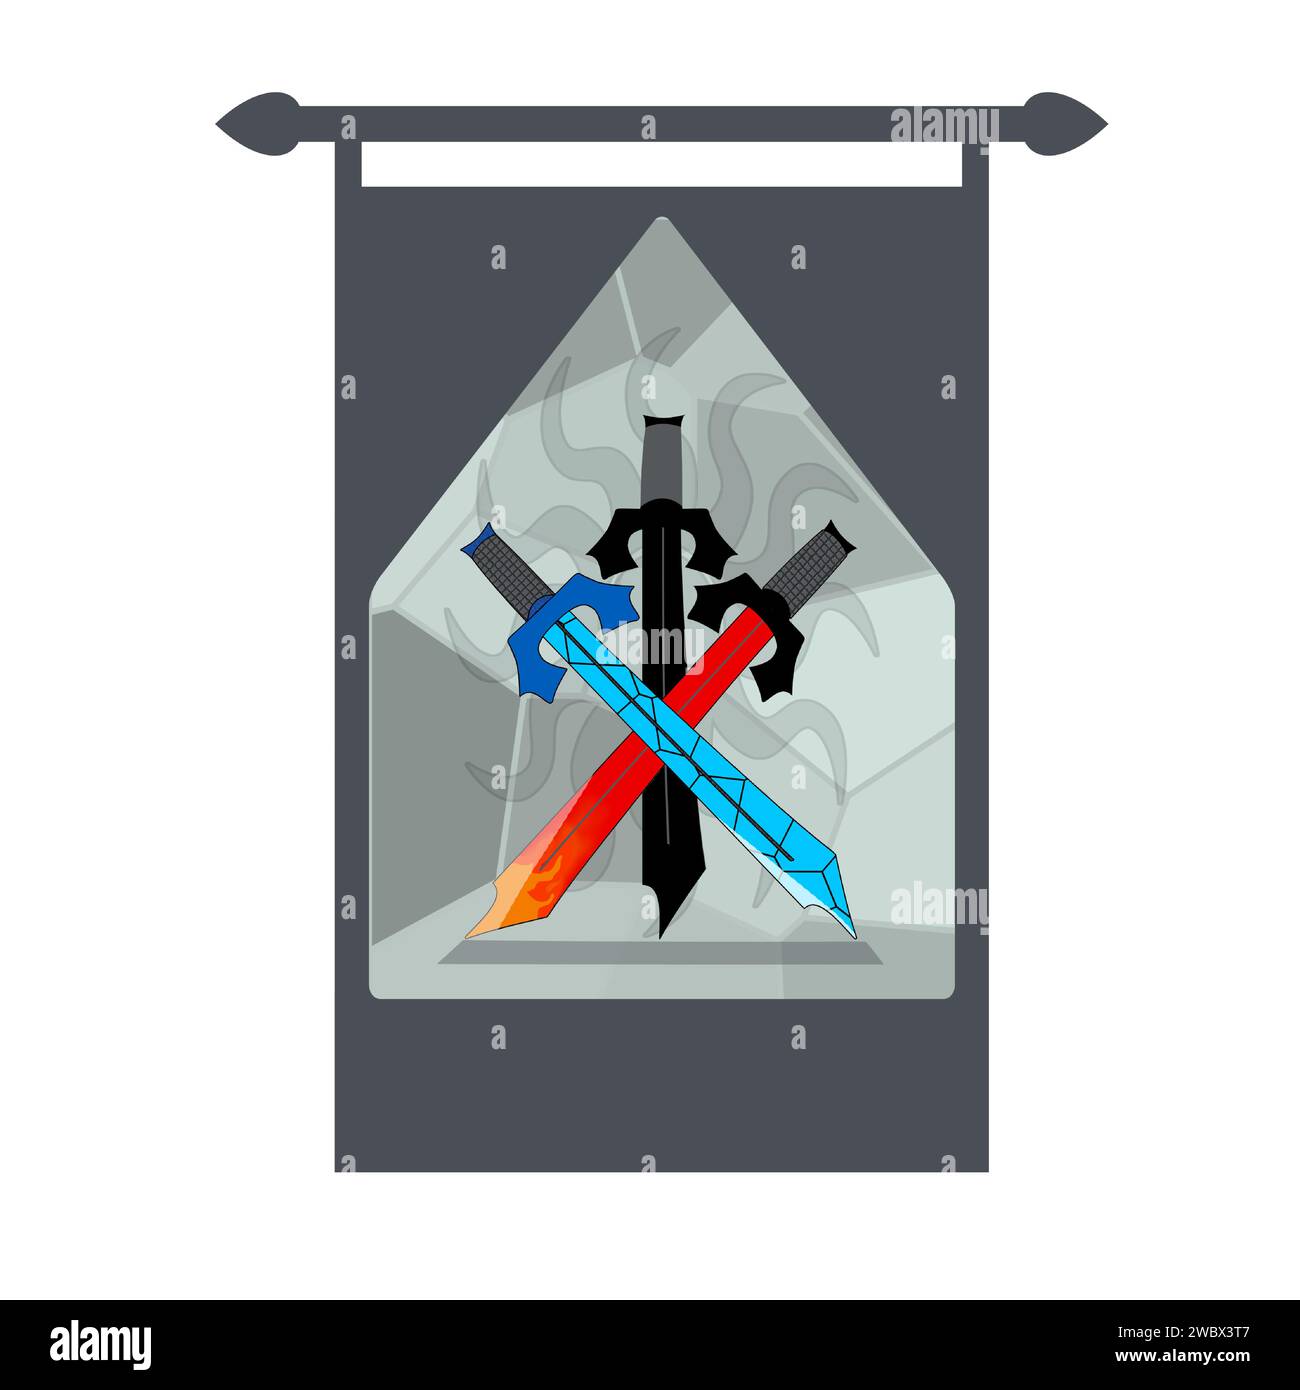 3 épées avec différents éléments et une illustration du soleil derrière les épées. Illustration de Vecteur